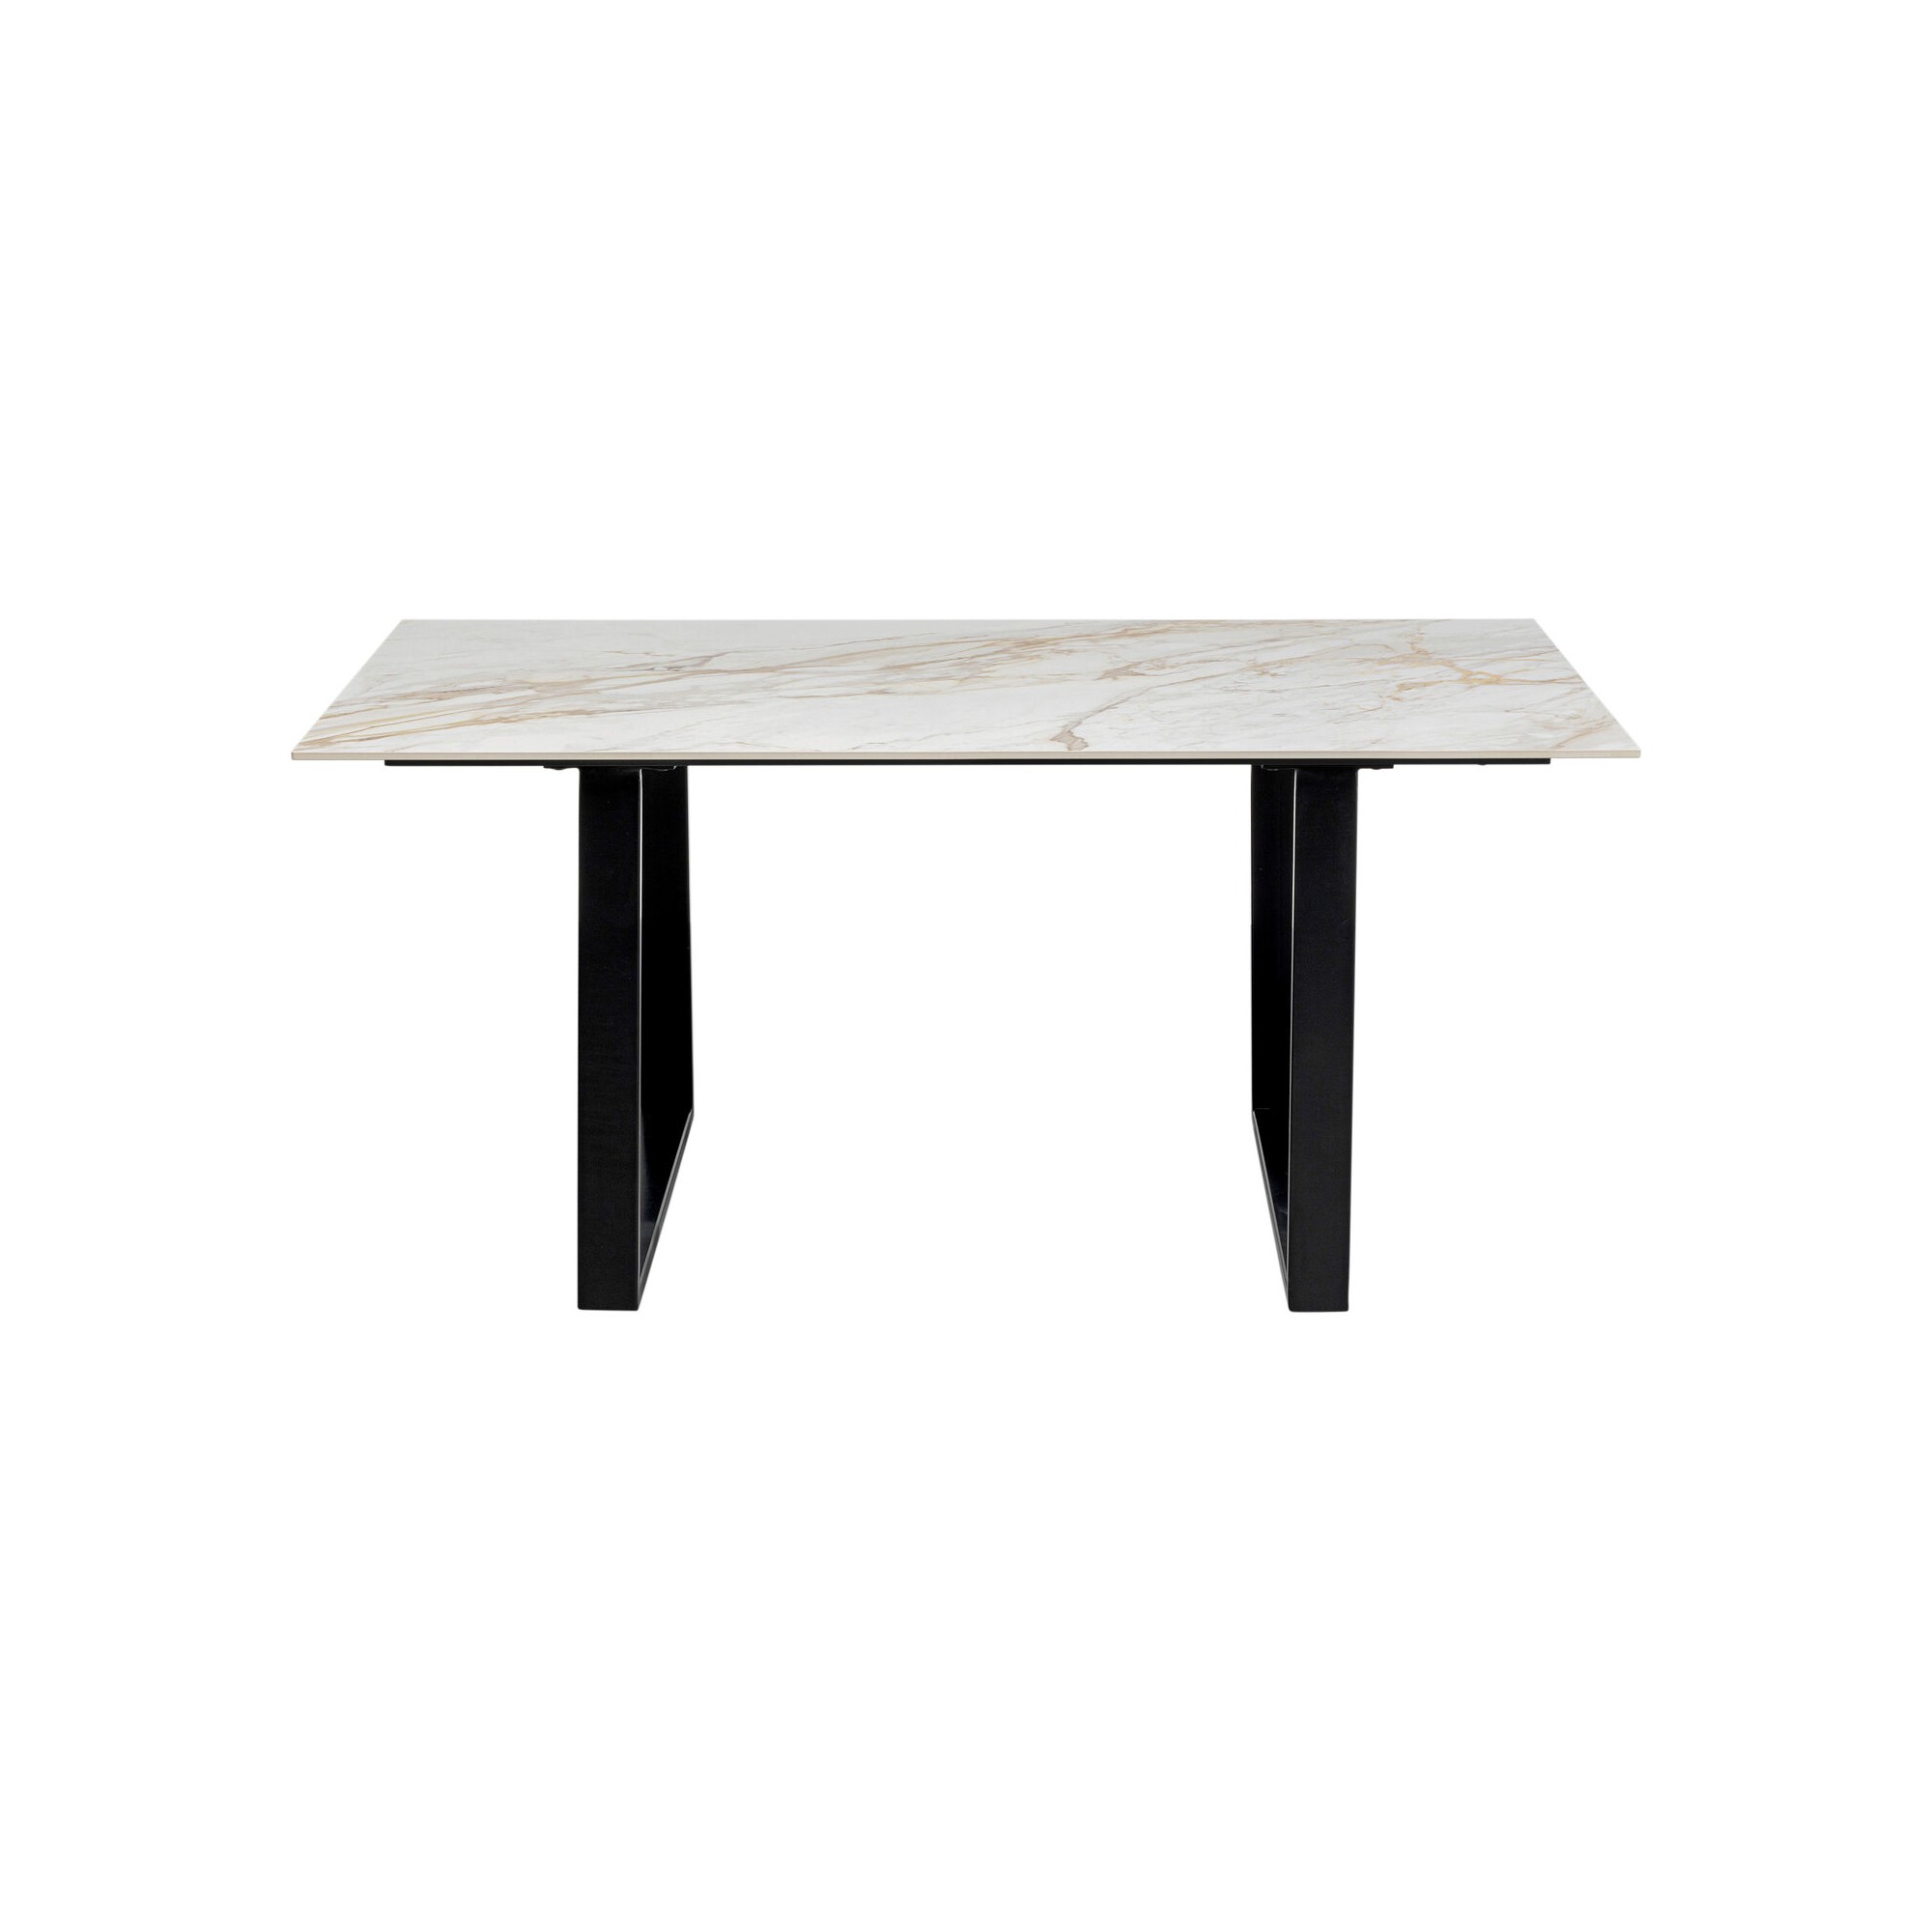 Table Eternity blanche et noire 160x80cm Kare Design